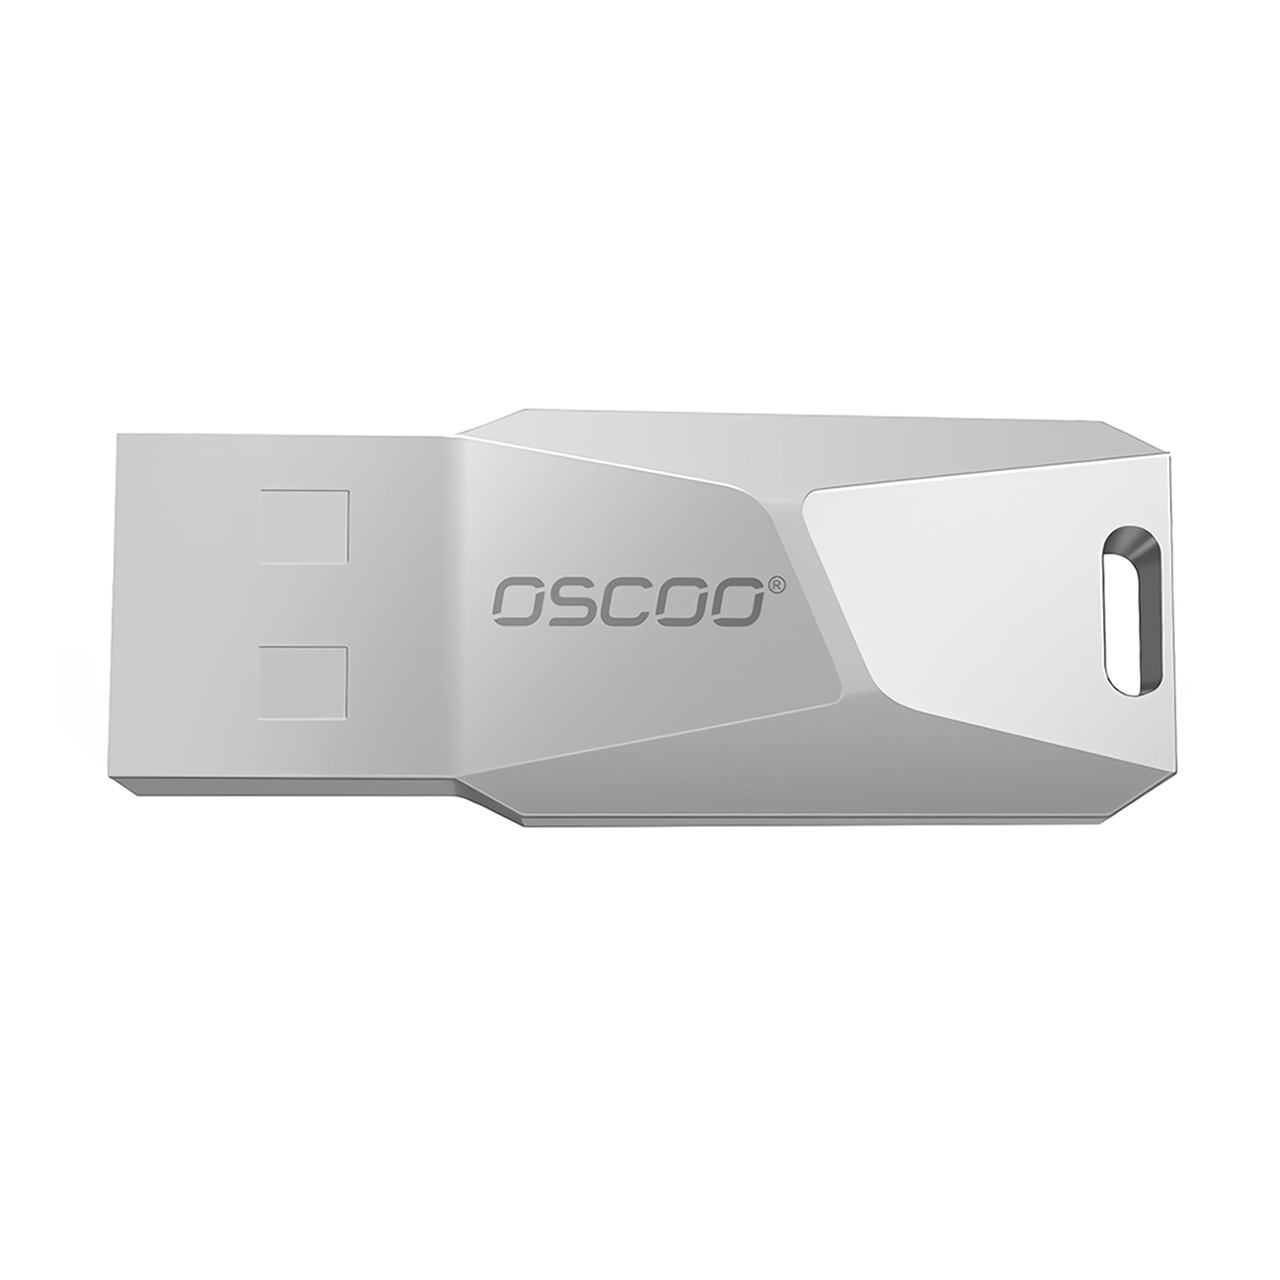 فلش OSCOO 006U USB2.0 Flash Memory-64GB نقره ای